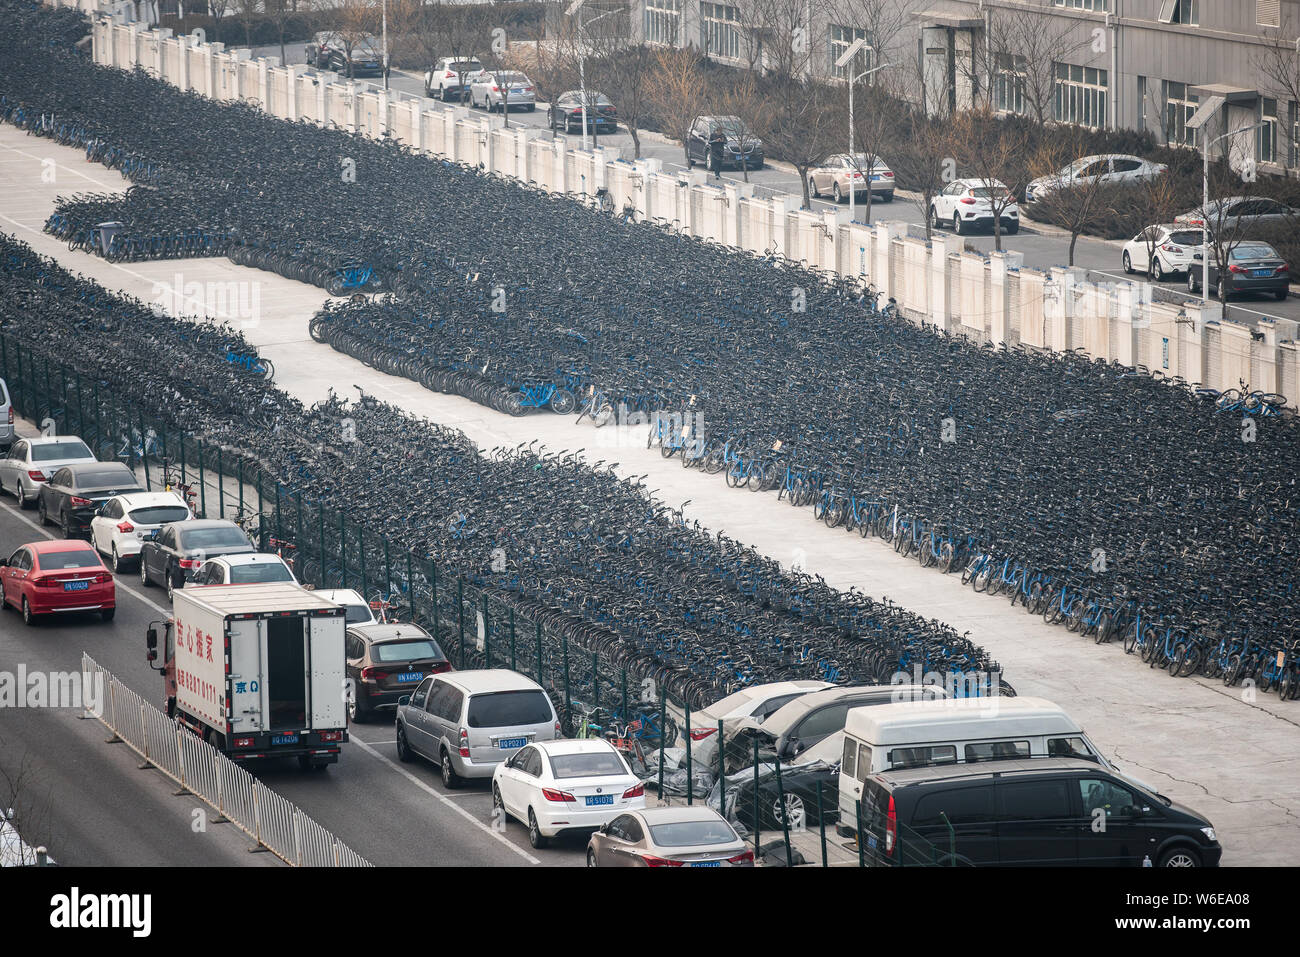 Luftaufnahme von Bluegogo Gemeinschafts-Fahrräder der chinesischen Taxifahrer hageln und Car-sharing service Didi Chuxing cramming einen Parkplatz in Peking, China, 28. Febr. Stockfoto